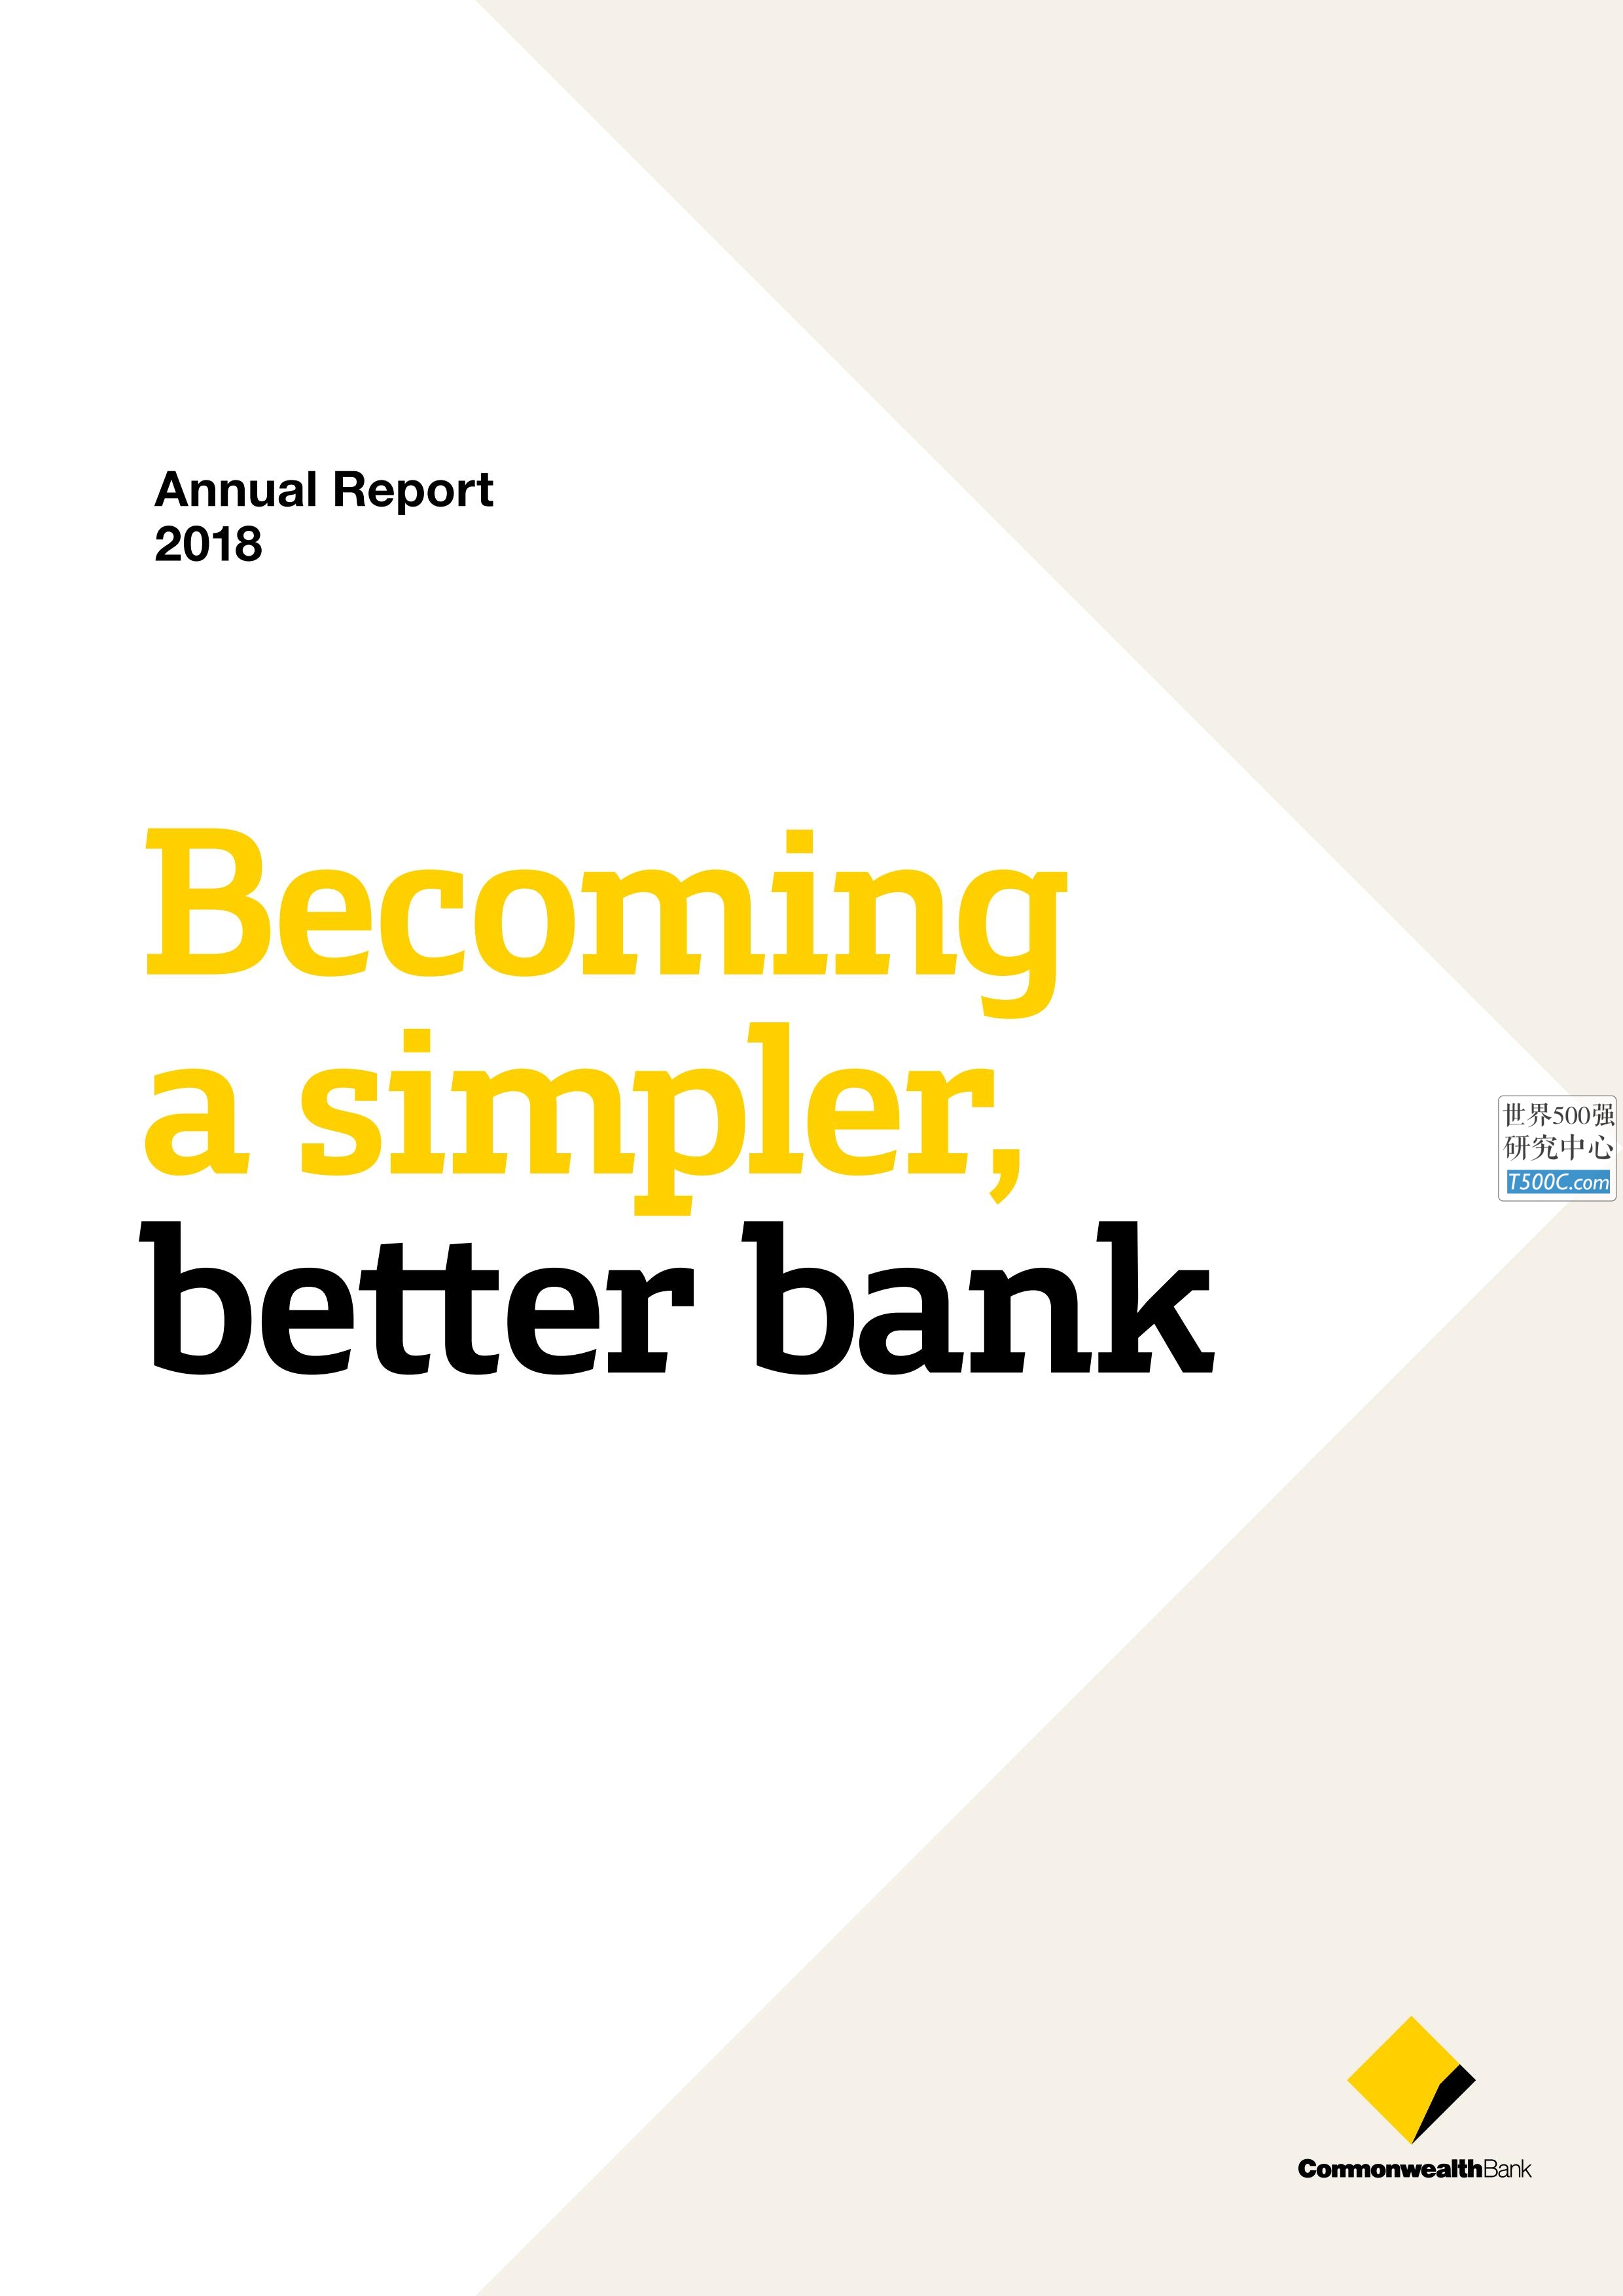 澳大利亚联邦银行Commbank_年报AnnualReport_2018